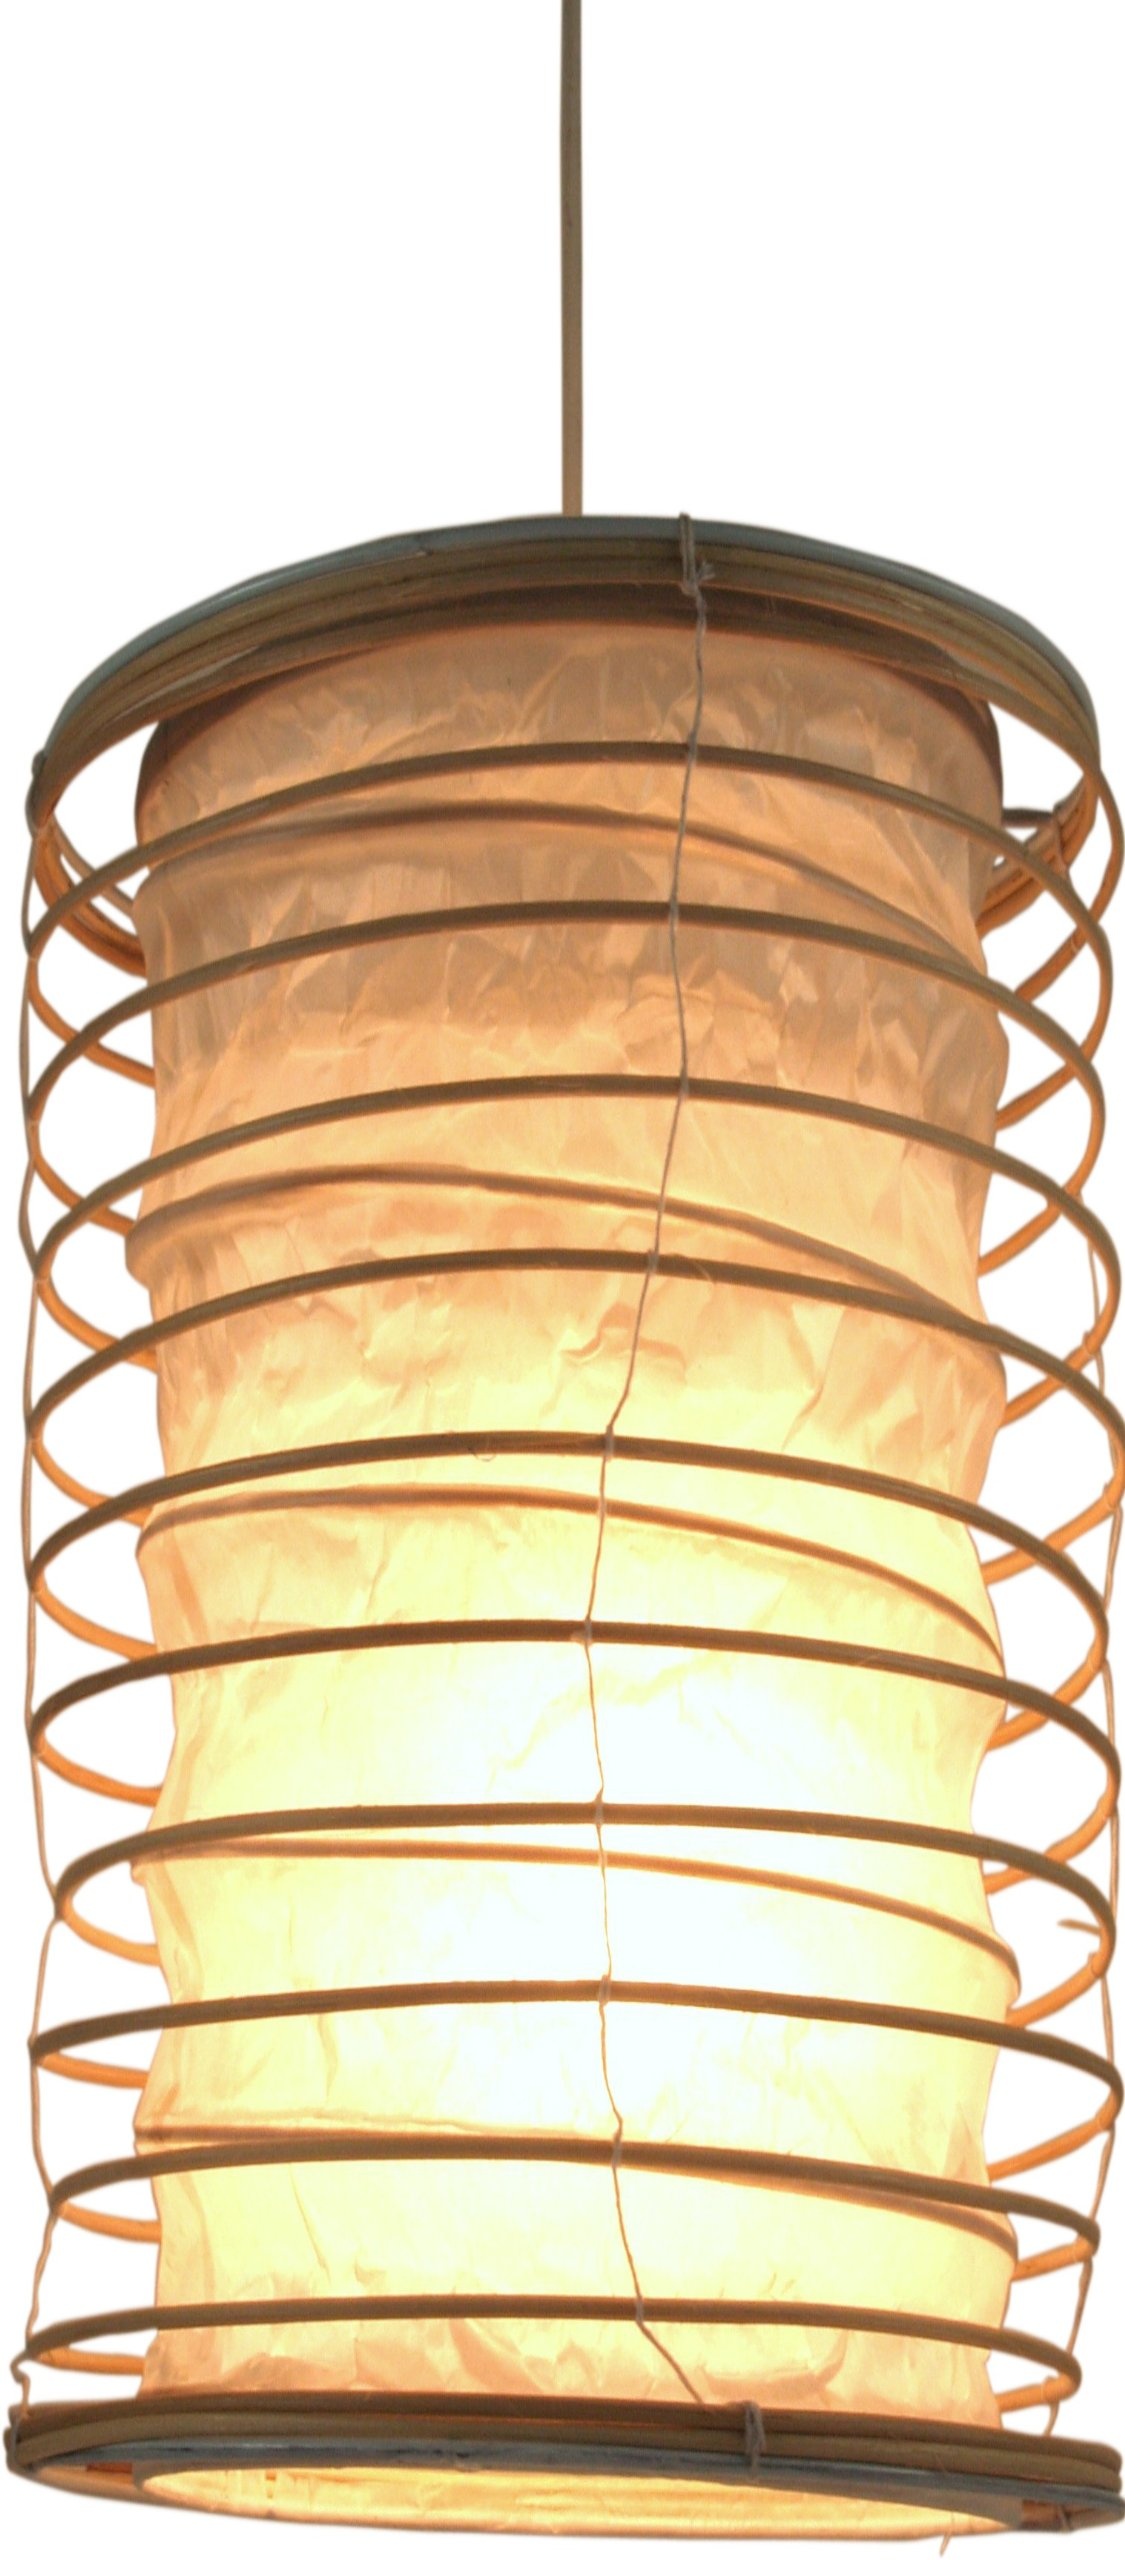 GURU SHOP Faltbarer Lampenschirm/Deckenlampe/Deckenleuchte Malai 50, Handgemacht in Bali, Baumwolle, Natur, Rattan, Farbe: Natur, 50x25x25 cm, Asiatische Lampenschirme aus Papier & Stoff